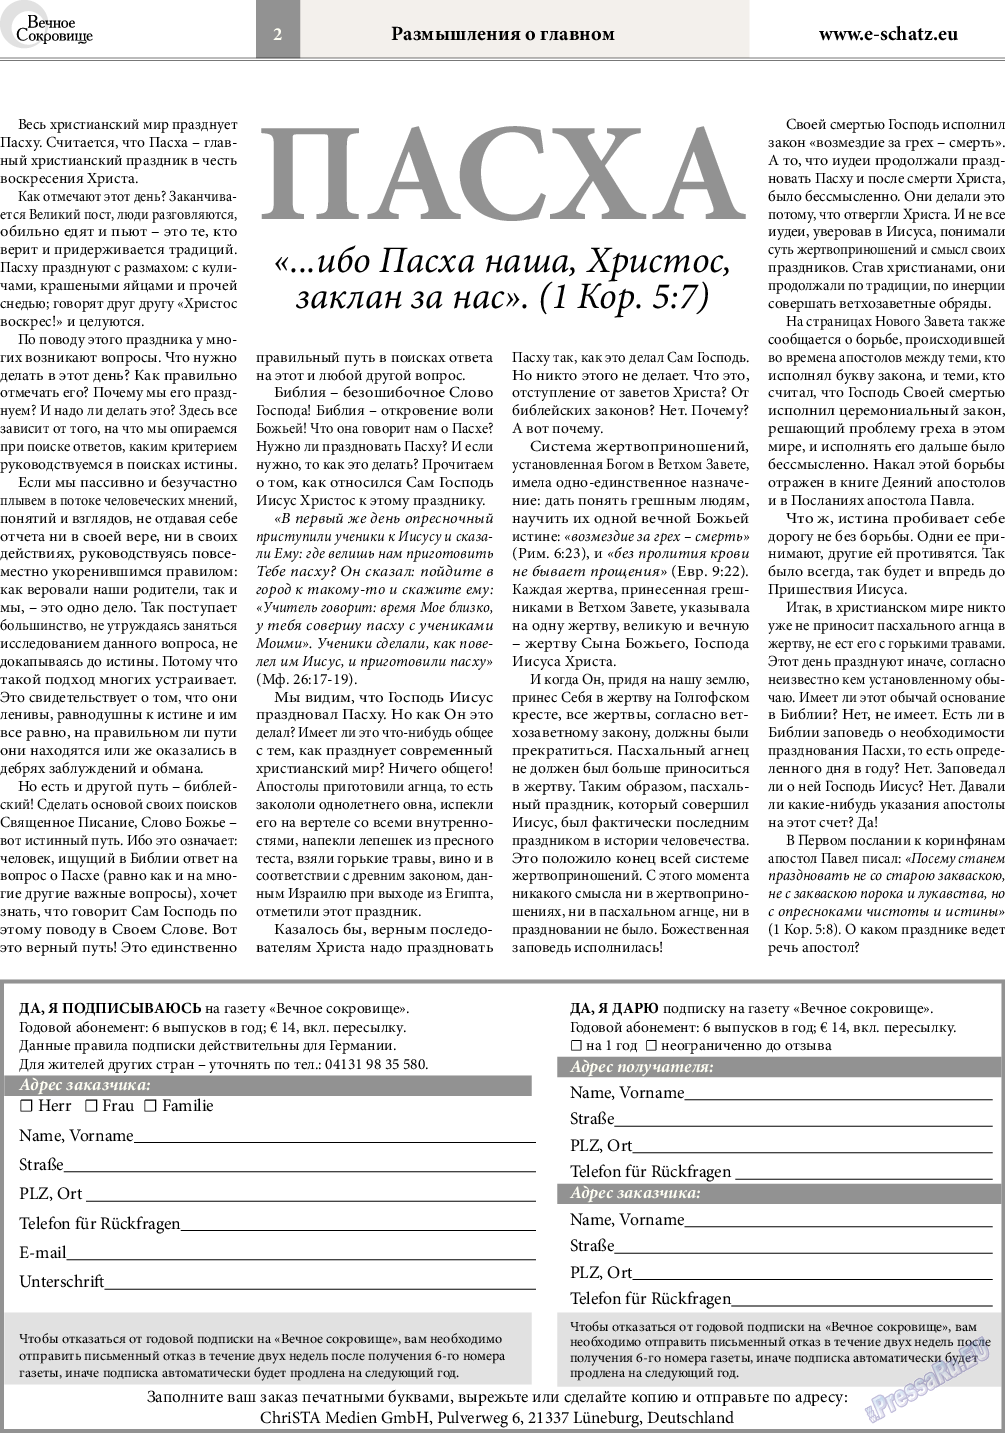 Вечное сокровище, газета. 2015 №2 стр.2